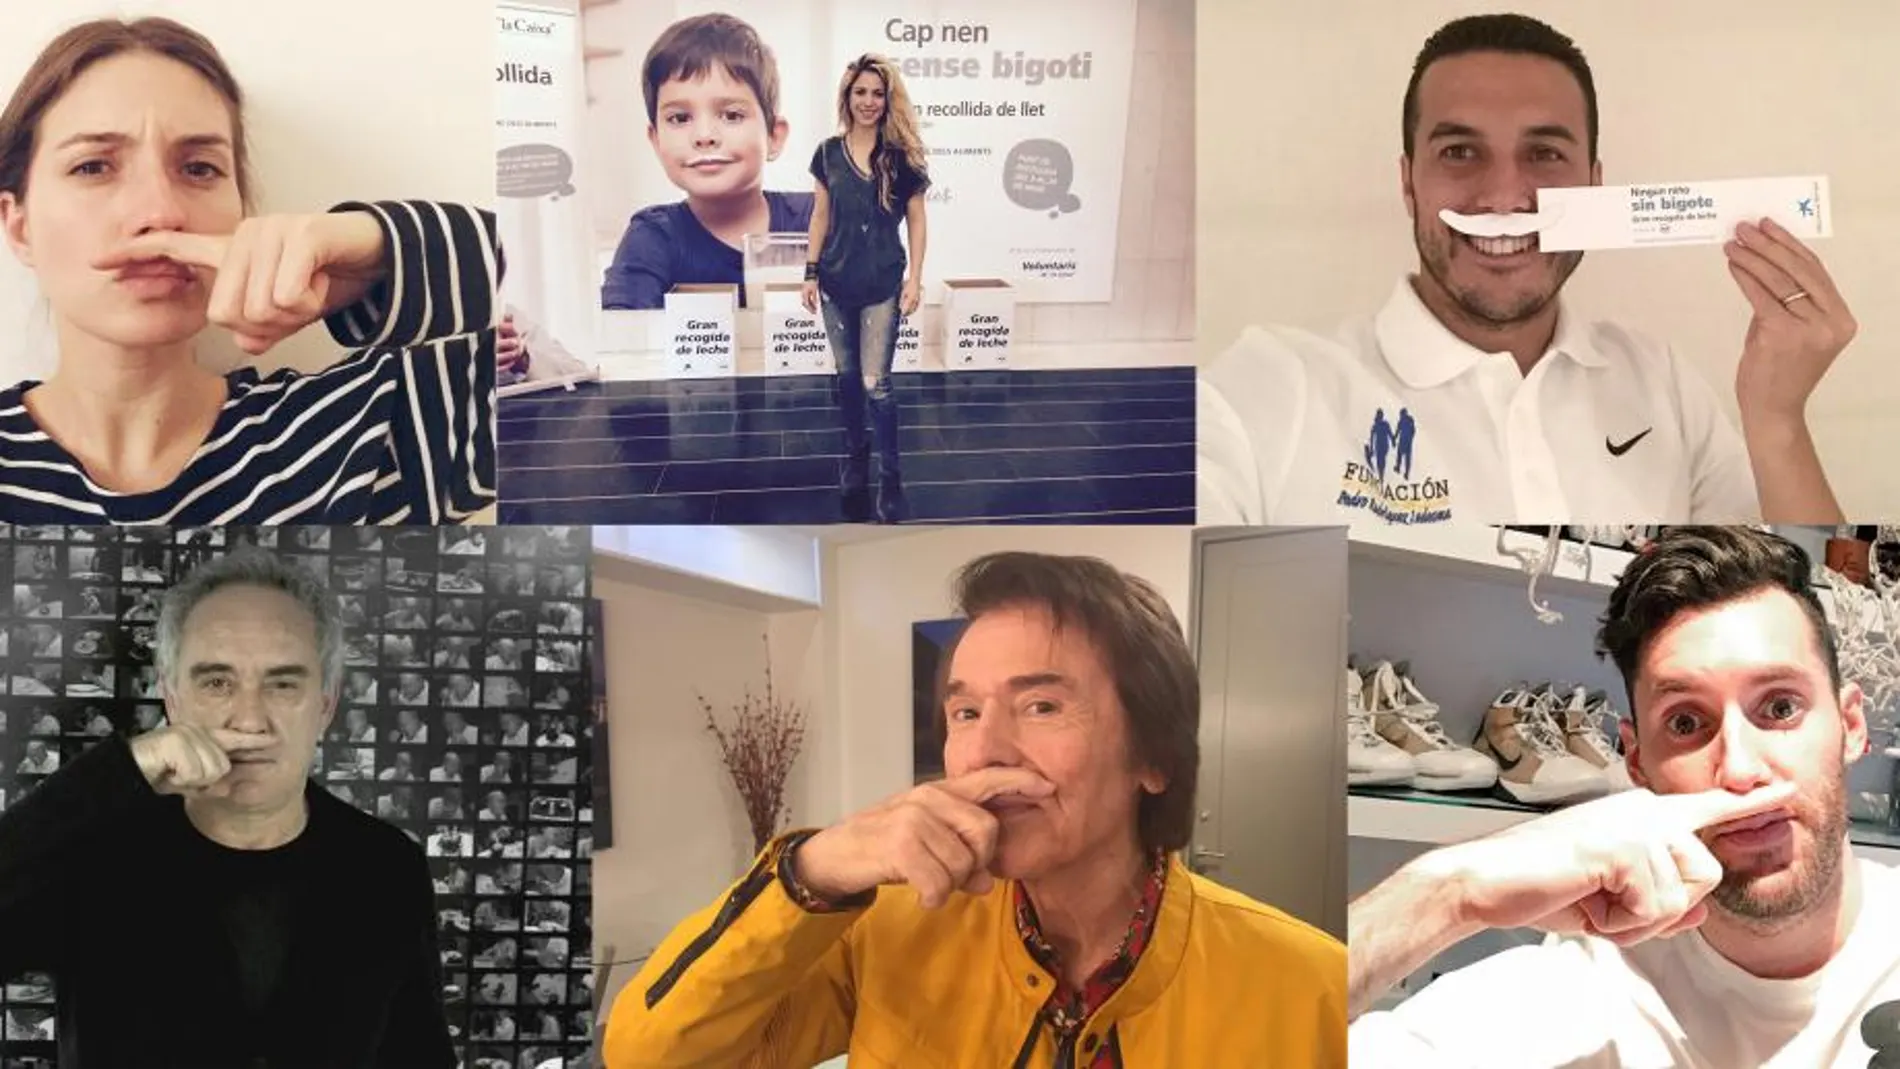 Los famosos se suman a la campaña "Ningún niños sin bigote"